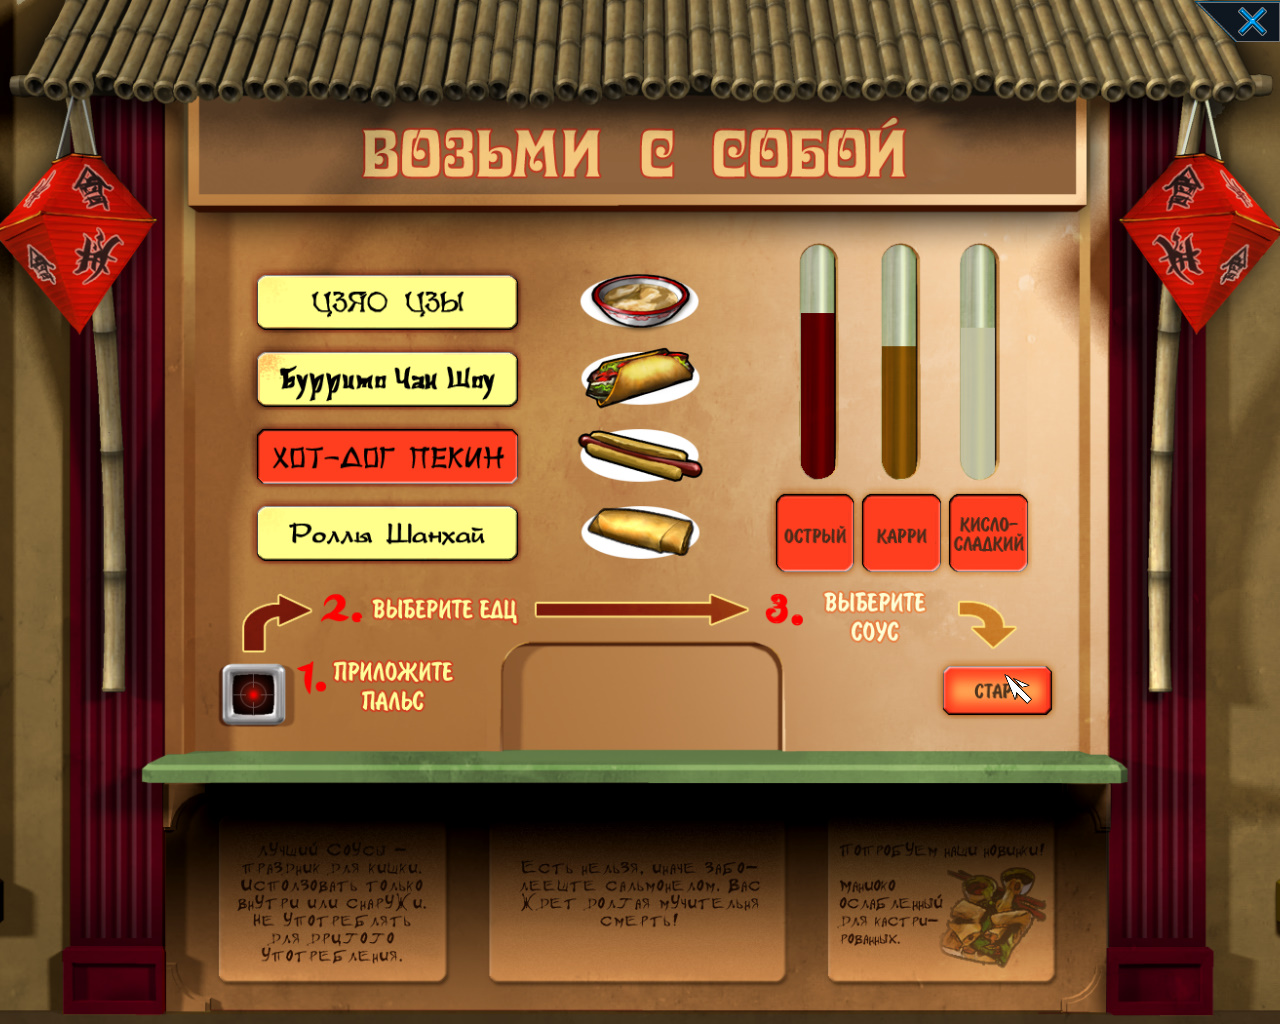 Аппарат для приготовления хот-догов (игра Goin' Downtown, локация - Китайская галерея)